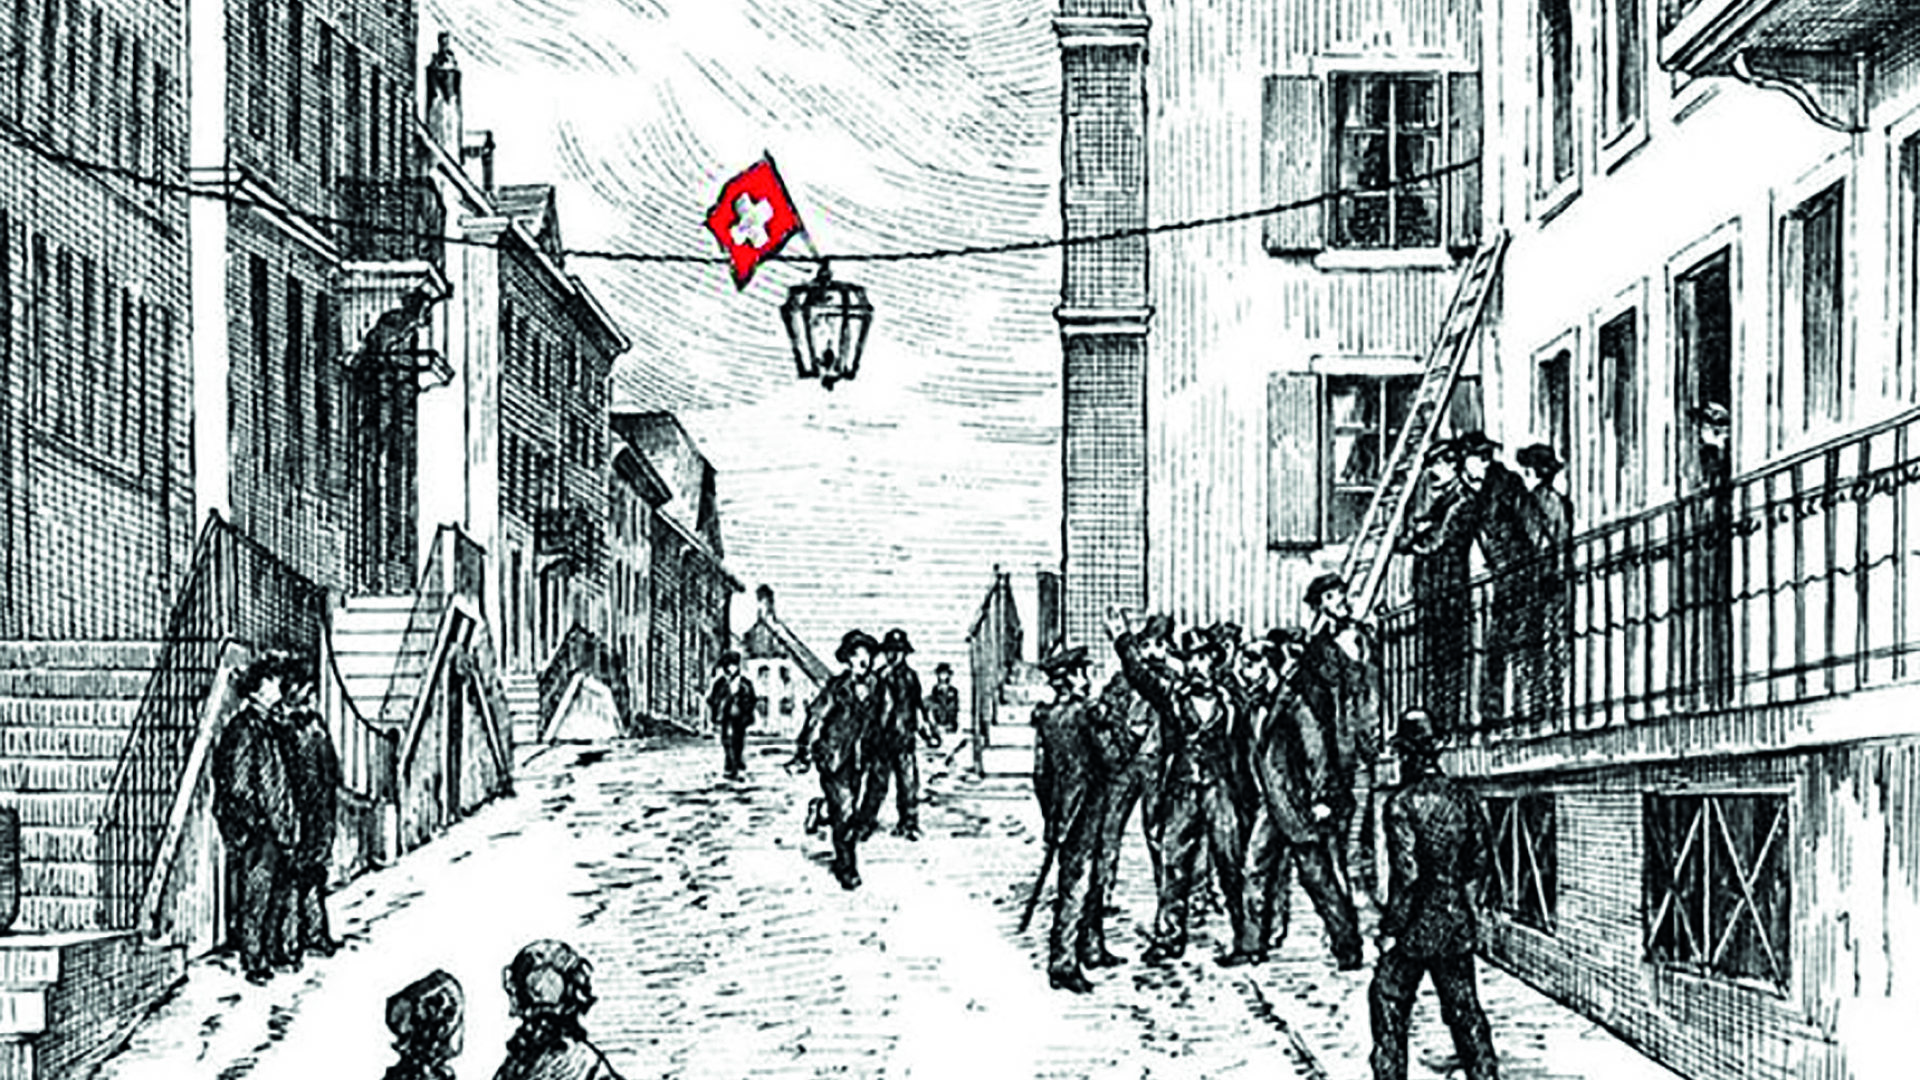 Le drapeau suisse cousu pendant la nuit et accroché au lampadaire. La bagarre qui a suivi avec trois gendarmes, 
neutralisés par le comité révolutionnaire loclois, lance la Révolution neuchâteloise. (dr)